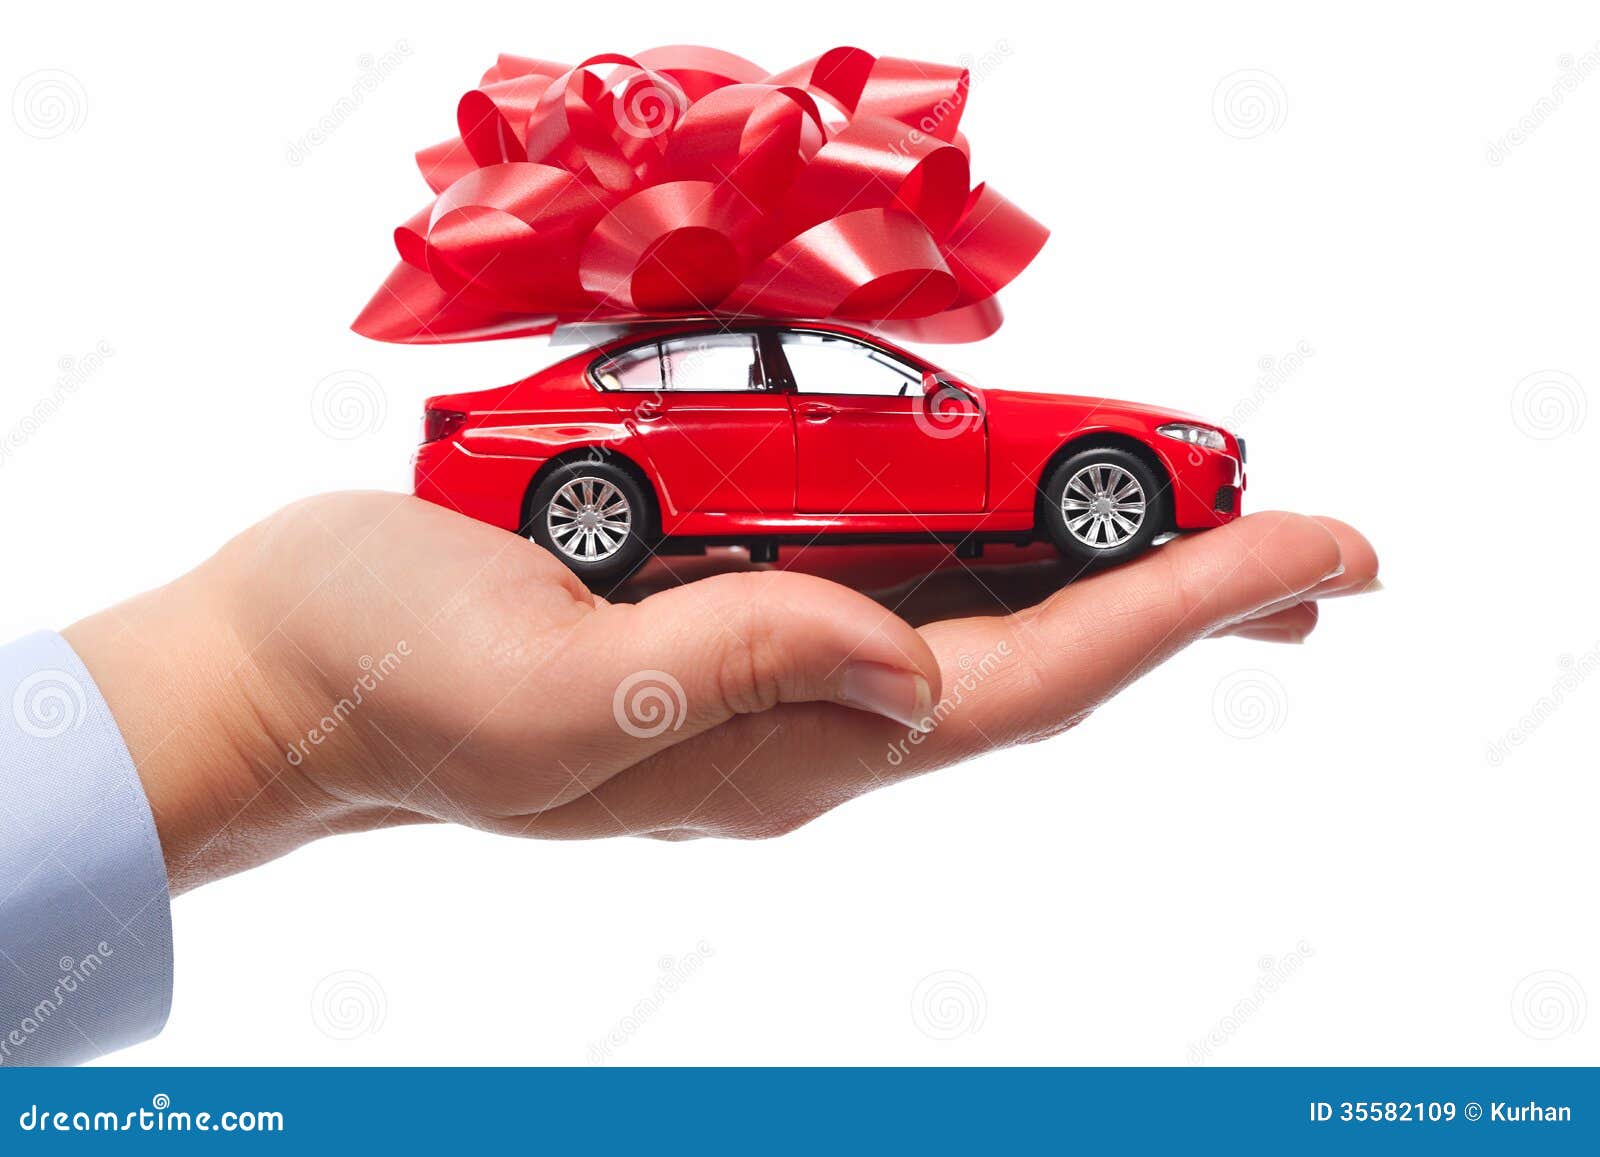 Nouveau cadeau de voiture. image stock. Image du main - 35582109